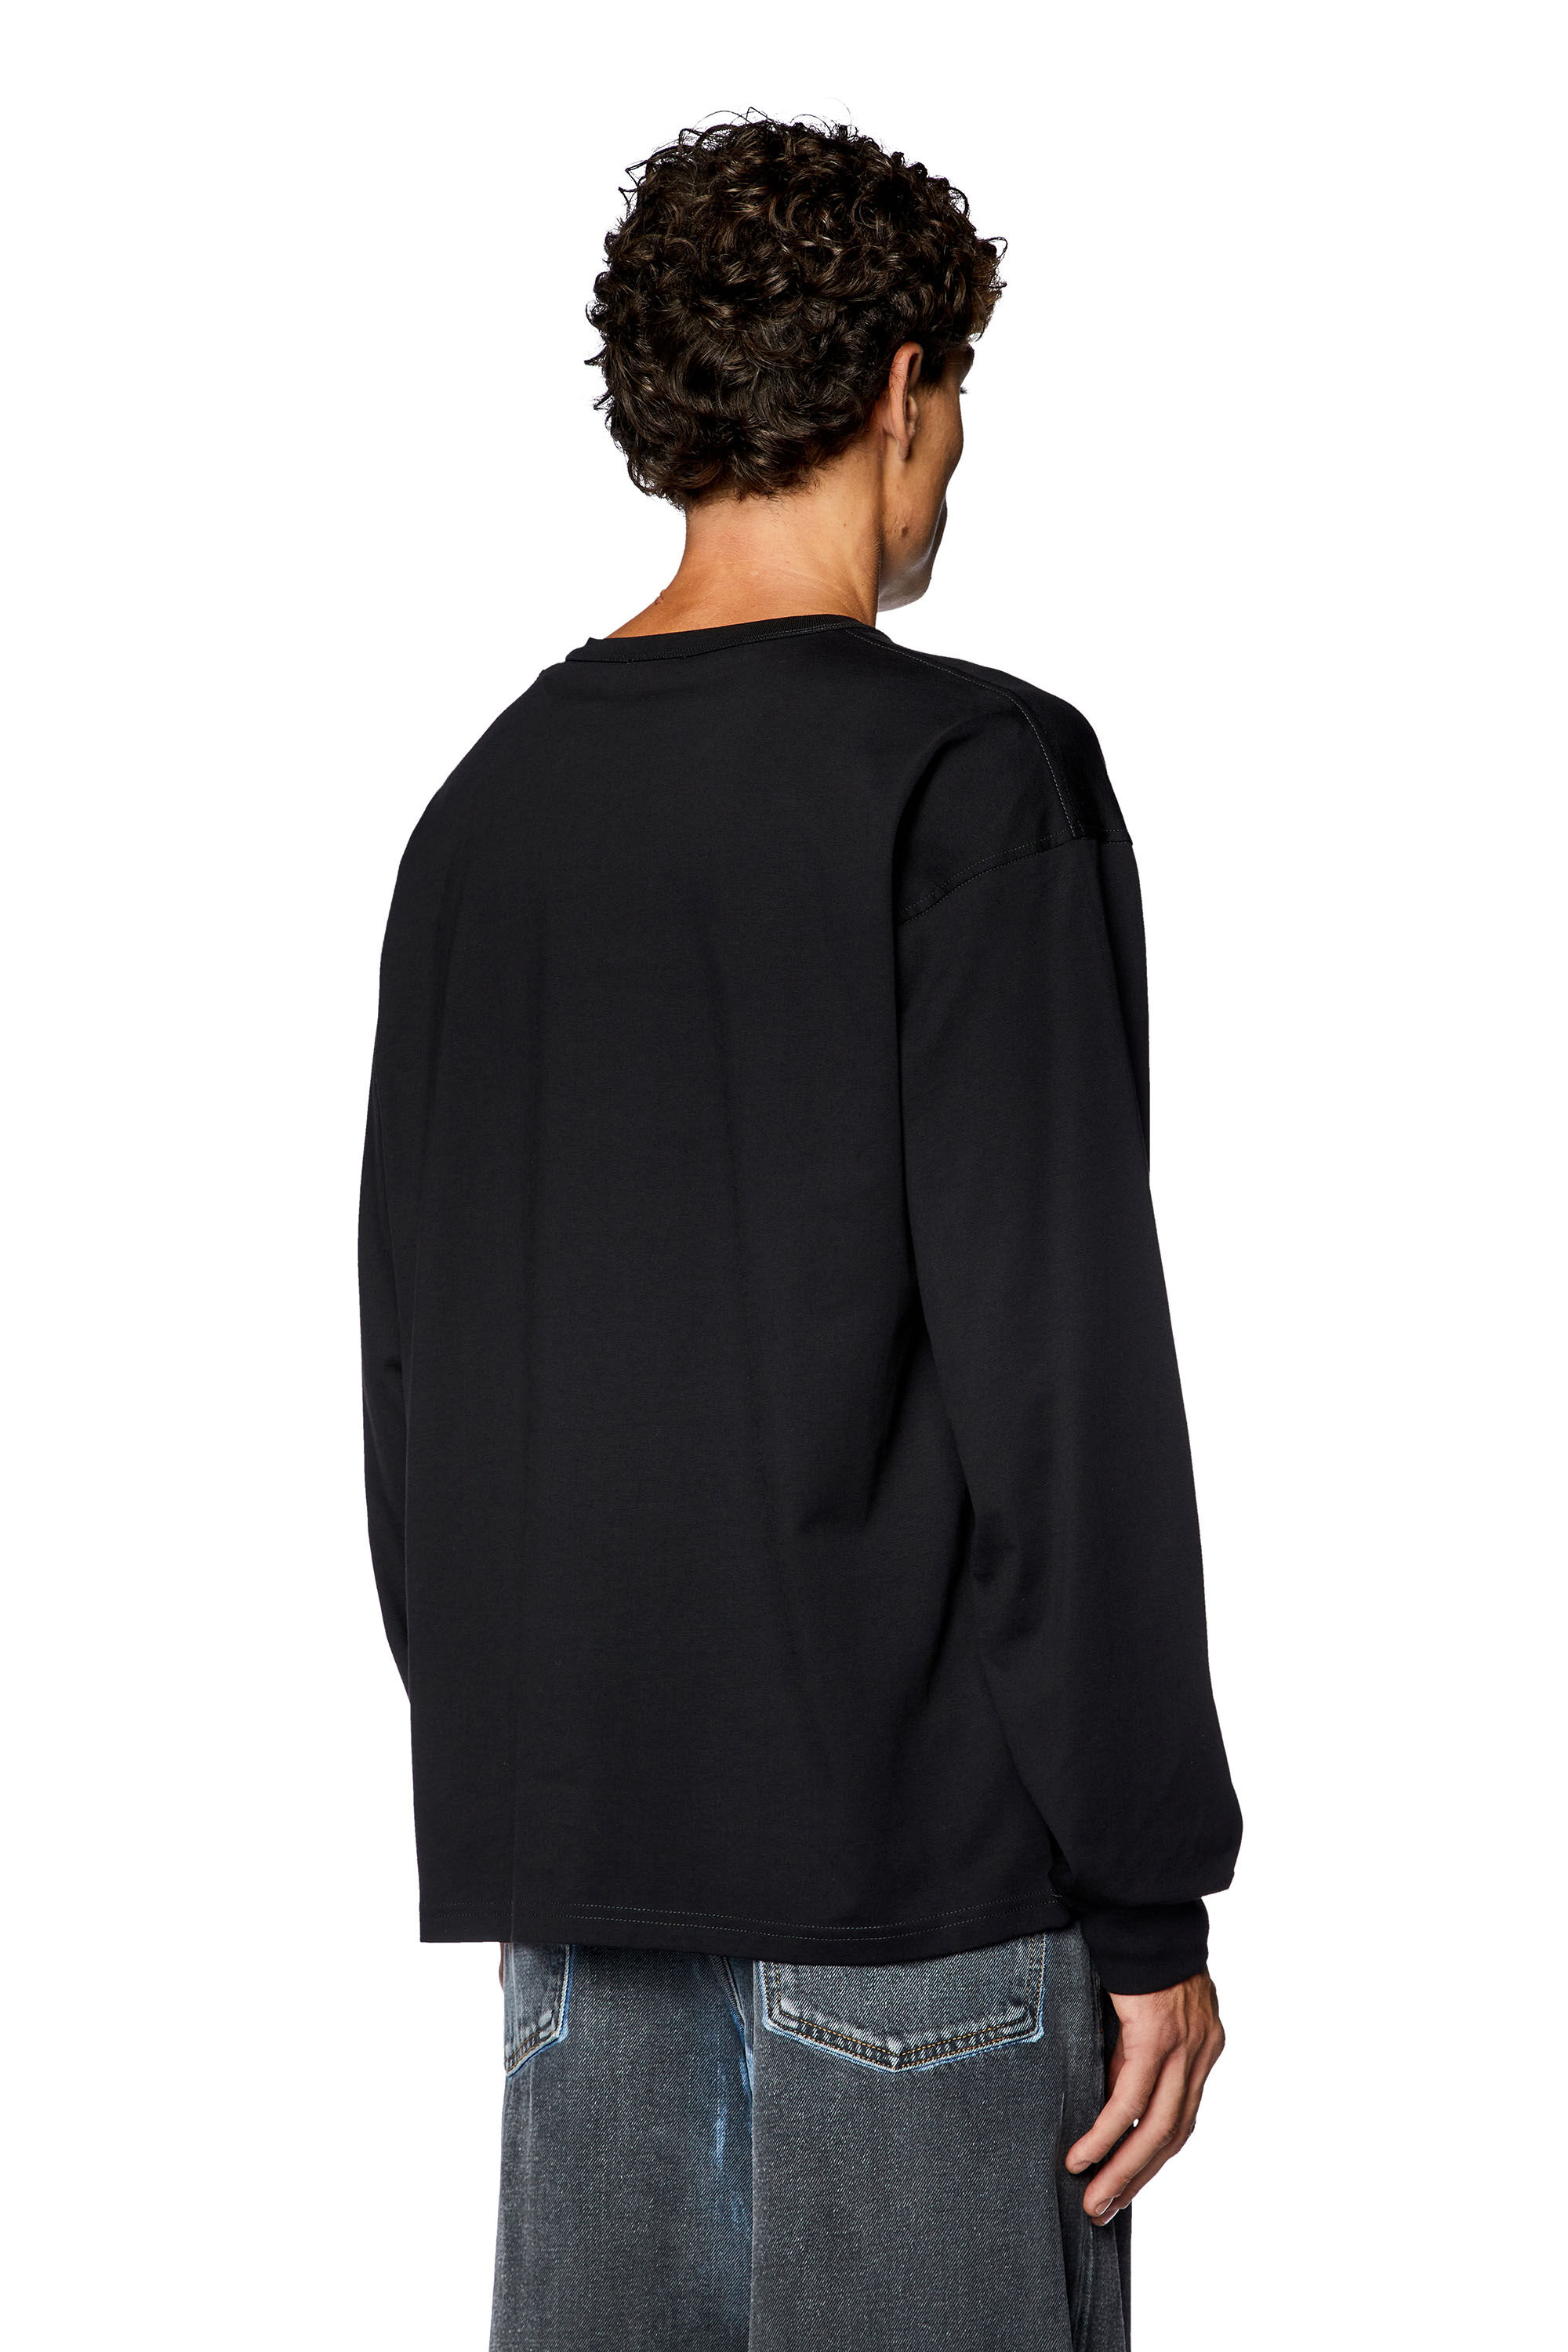 Men's Long-sleeve T-shirt with Prototype print | Black | Diesel